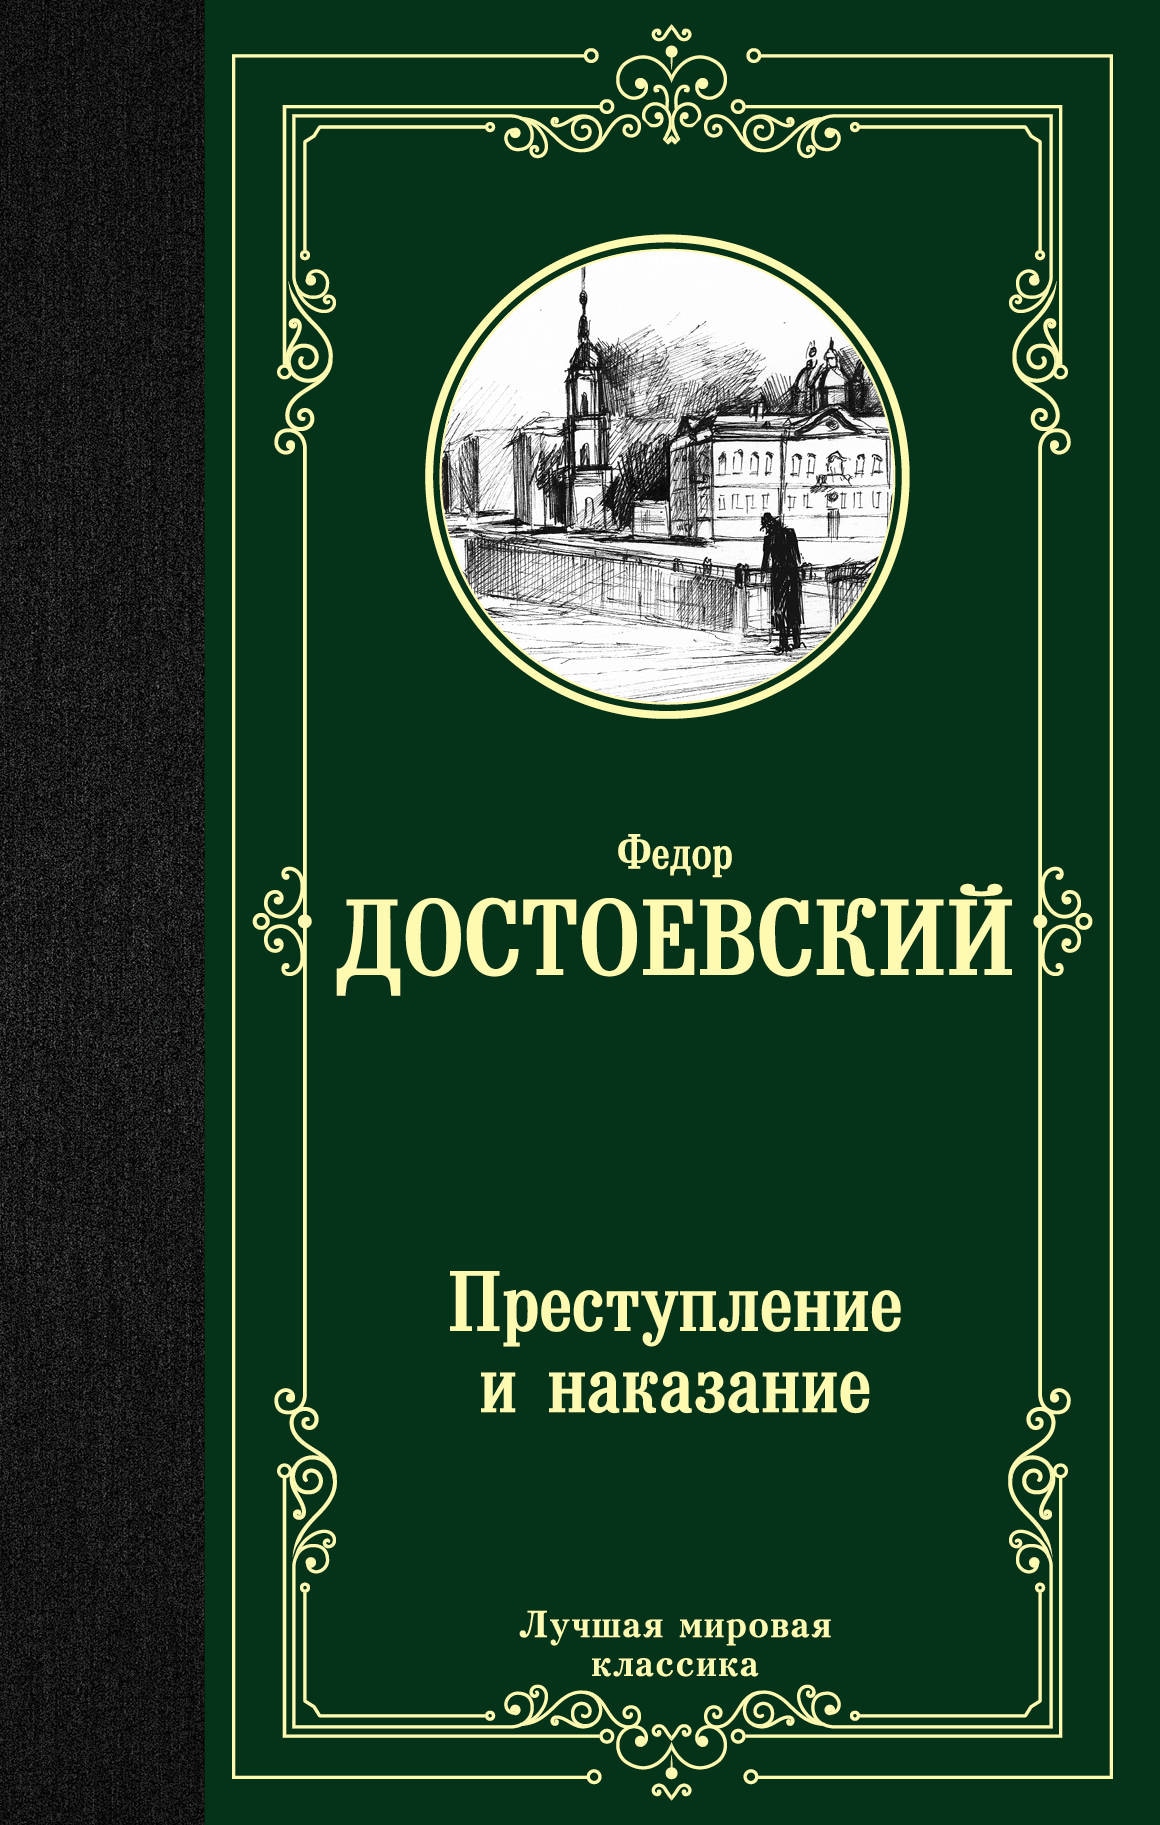 Книга «Преступление и наказание» Федор Достоевский — 19 июля 2021 г.